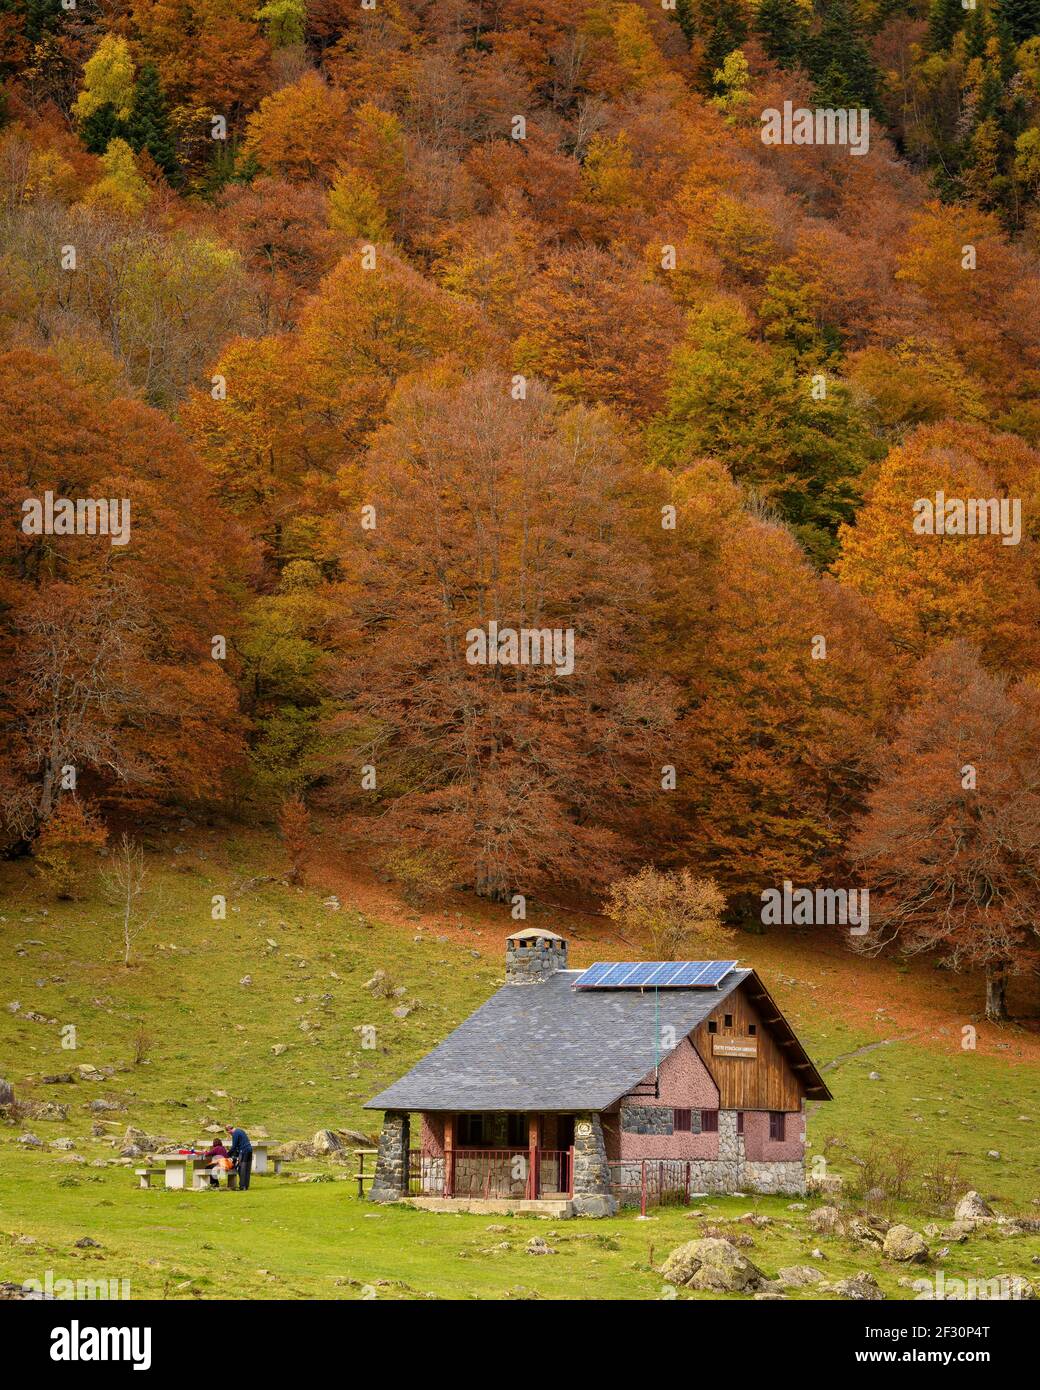 Buchenwald im Artiga de Lin-Tal, im Herbst (Aran-Tal, Katalonien, Spanien, Pyrenäen) ESP: Hayedo del valle de Artiga de Lin, en otoño Stockfoto